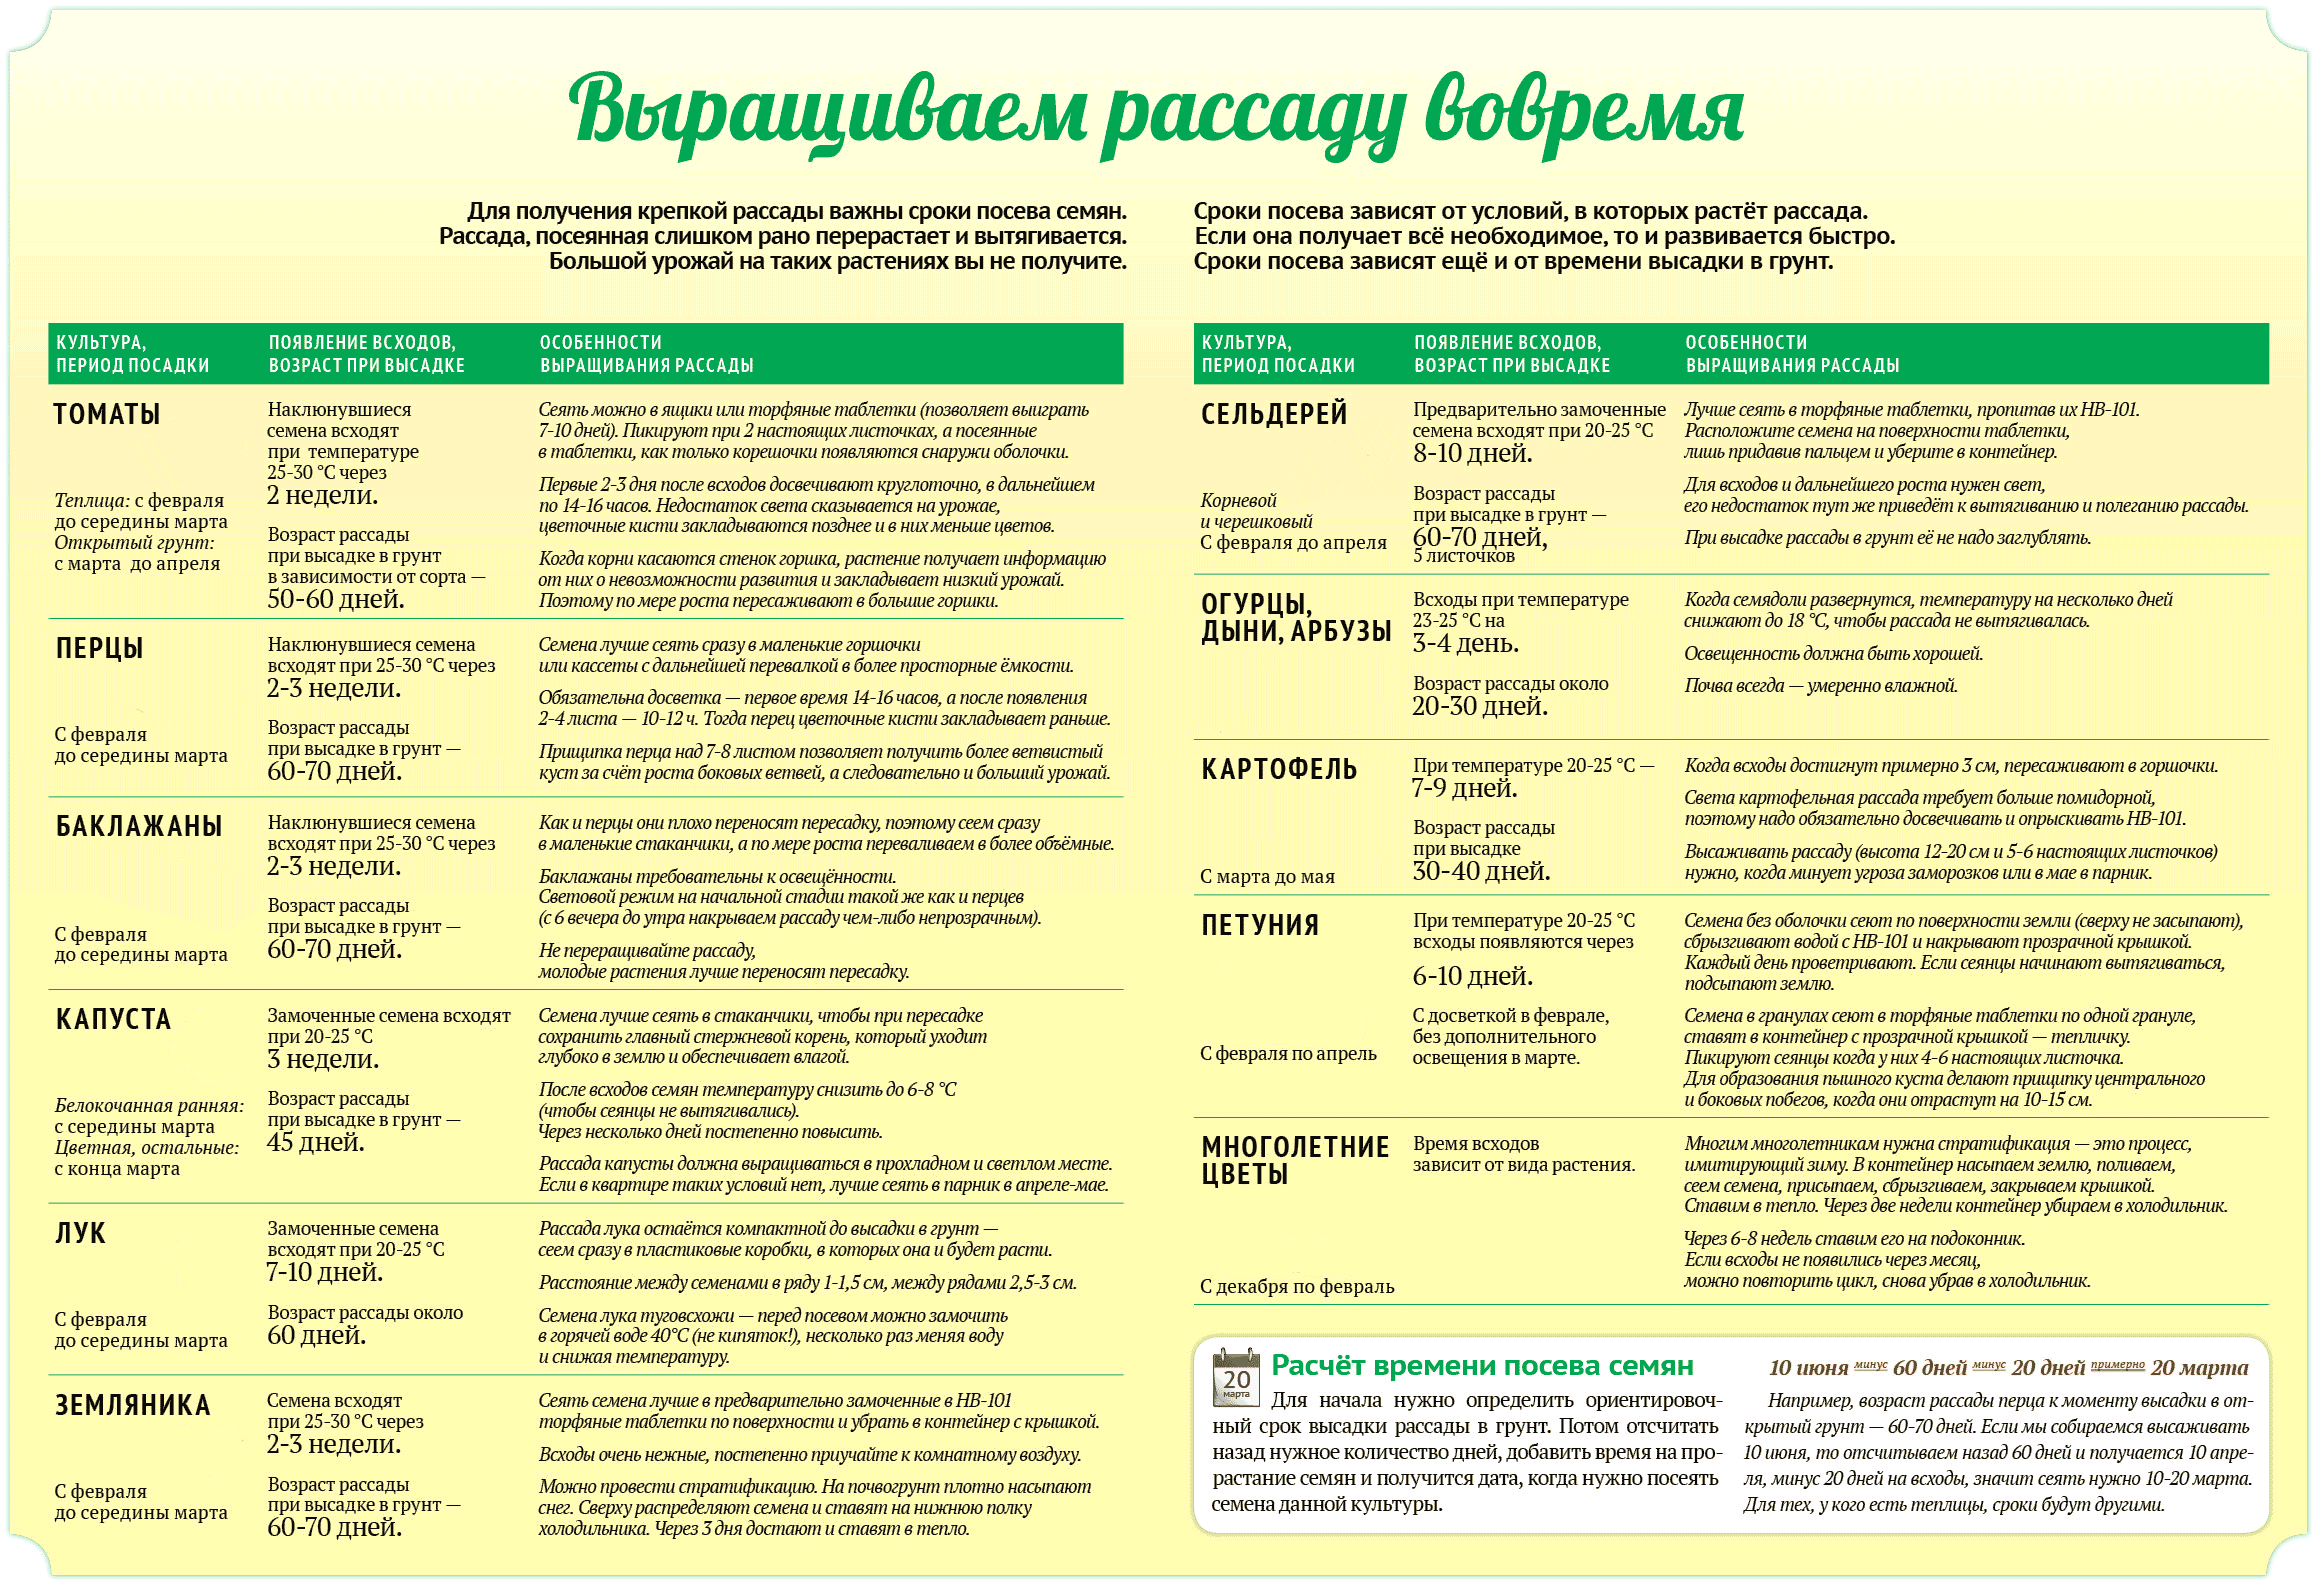 Посадка перца на рассаду в 2023 году в московской области: благоприятные дни по лунному календарю для посева семян и пересадки рассады